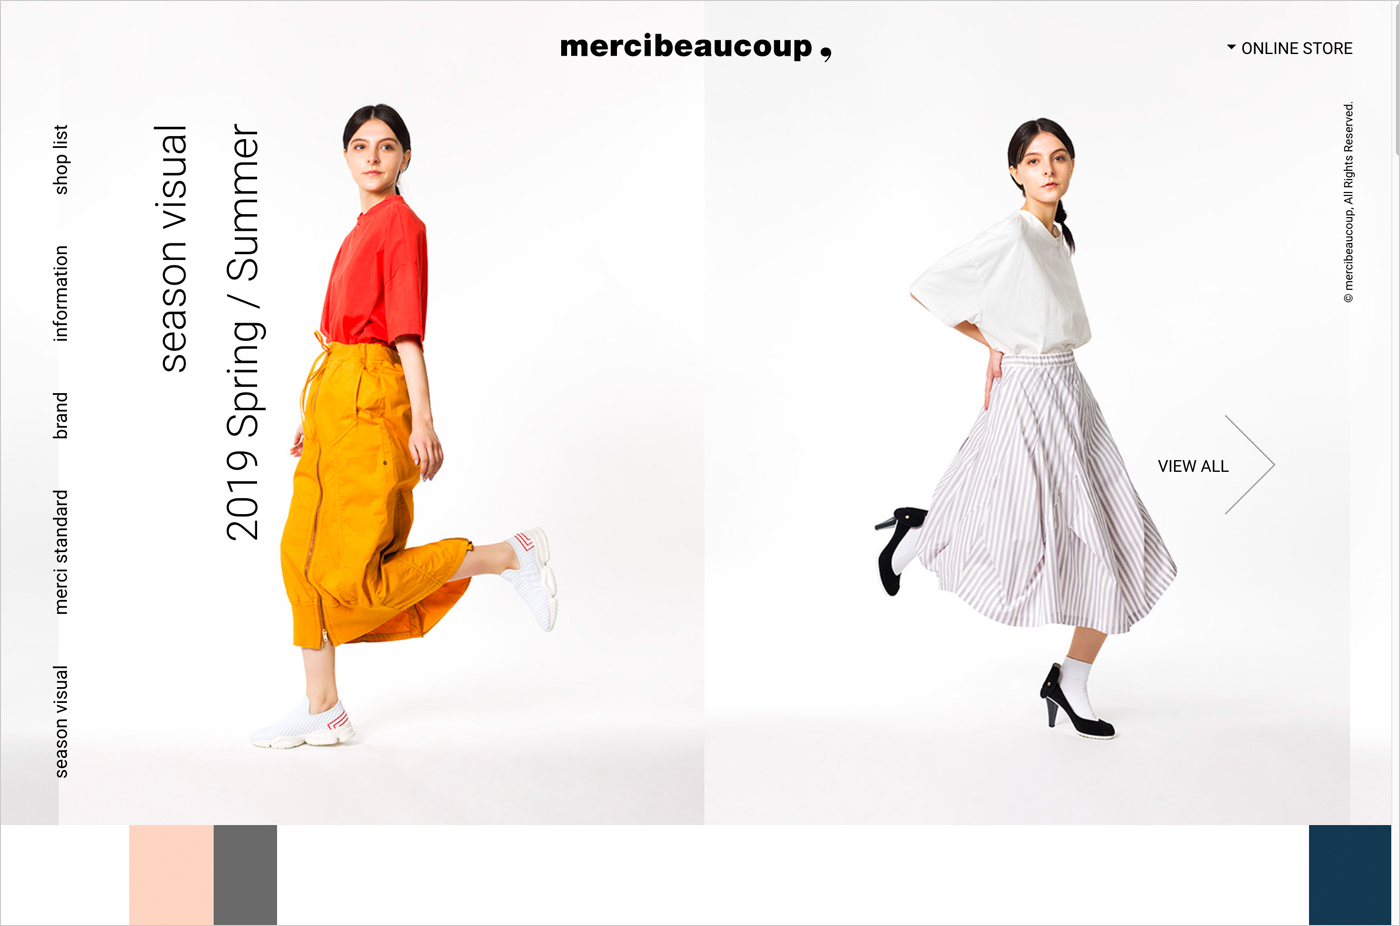 mercibeaucoup,ウェブサイトの画面キャプチャ画像